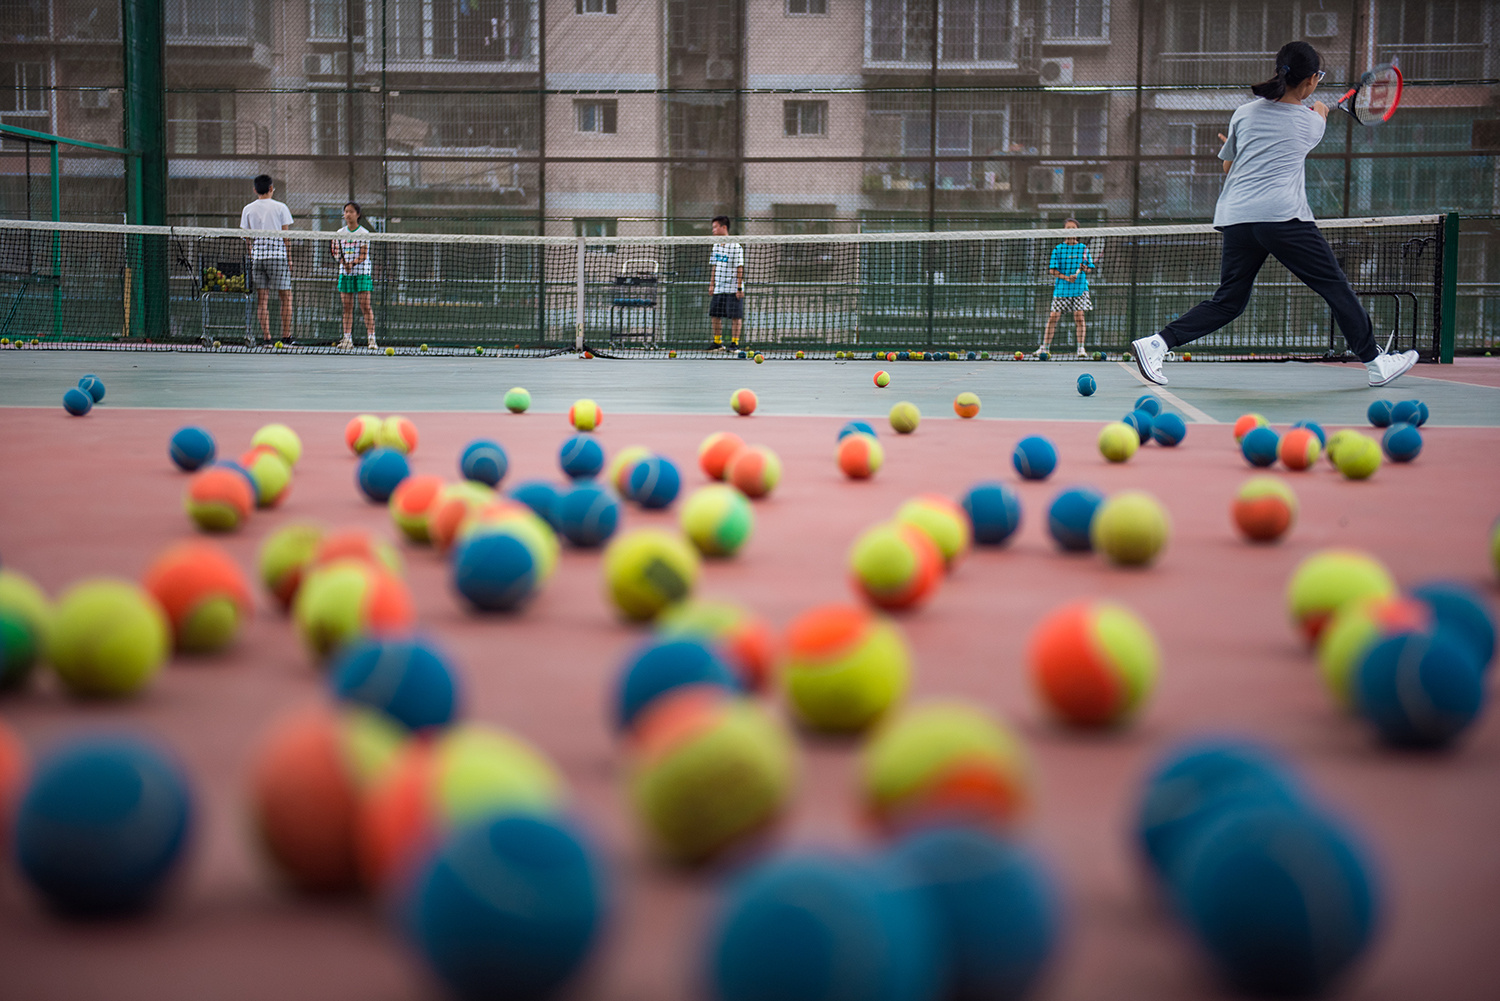 万州区五桥街道，学生利用暑假练习网球。记者 侯本艳 摄